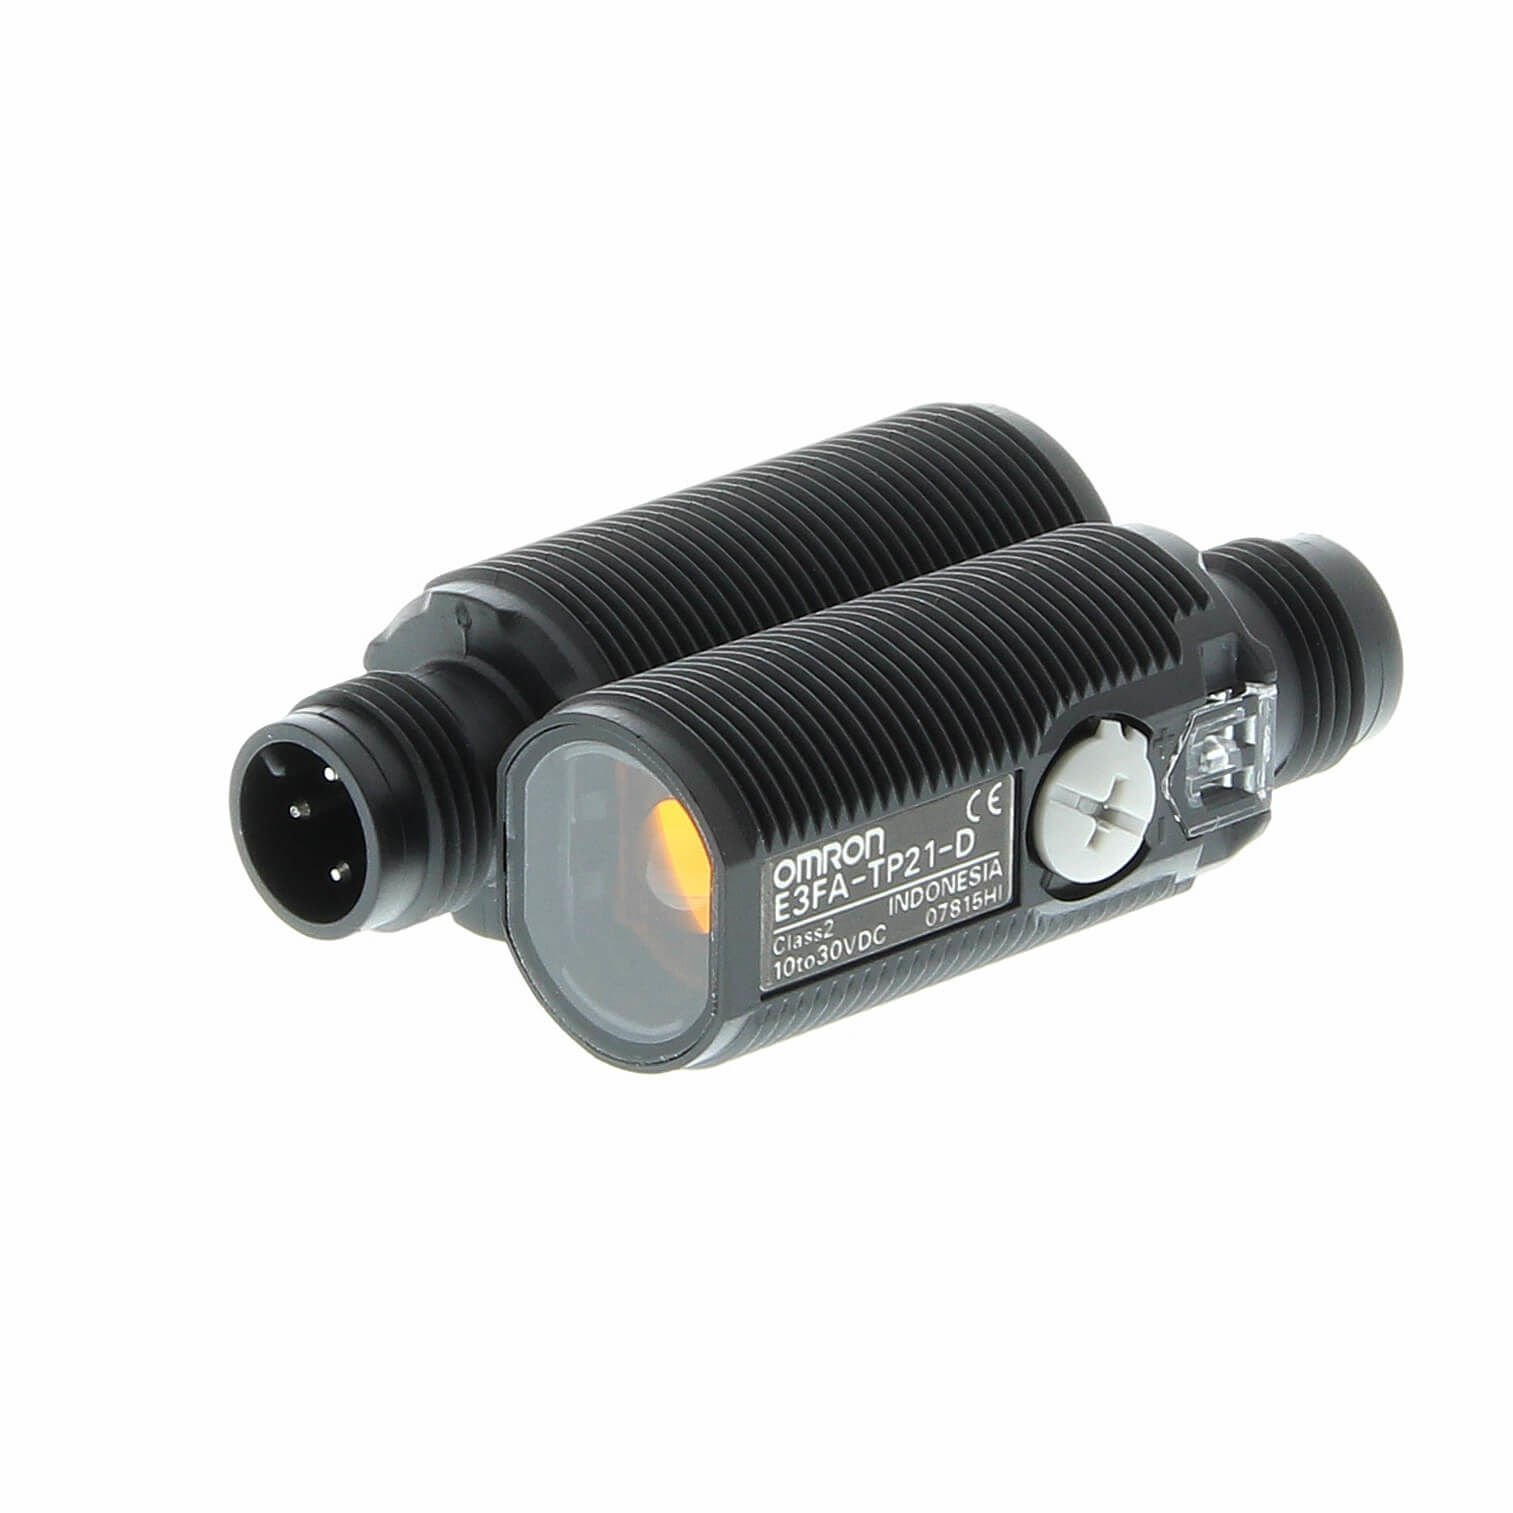 Omron – E3FA-TP21 Fotoelektrik Sensör, M18 Eksenel, Plastik, Kırmızı LED